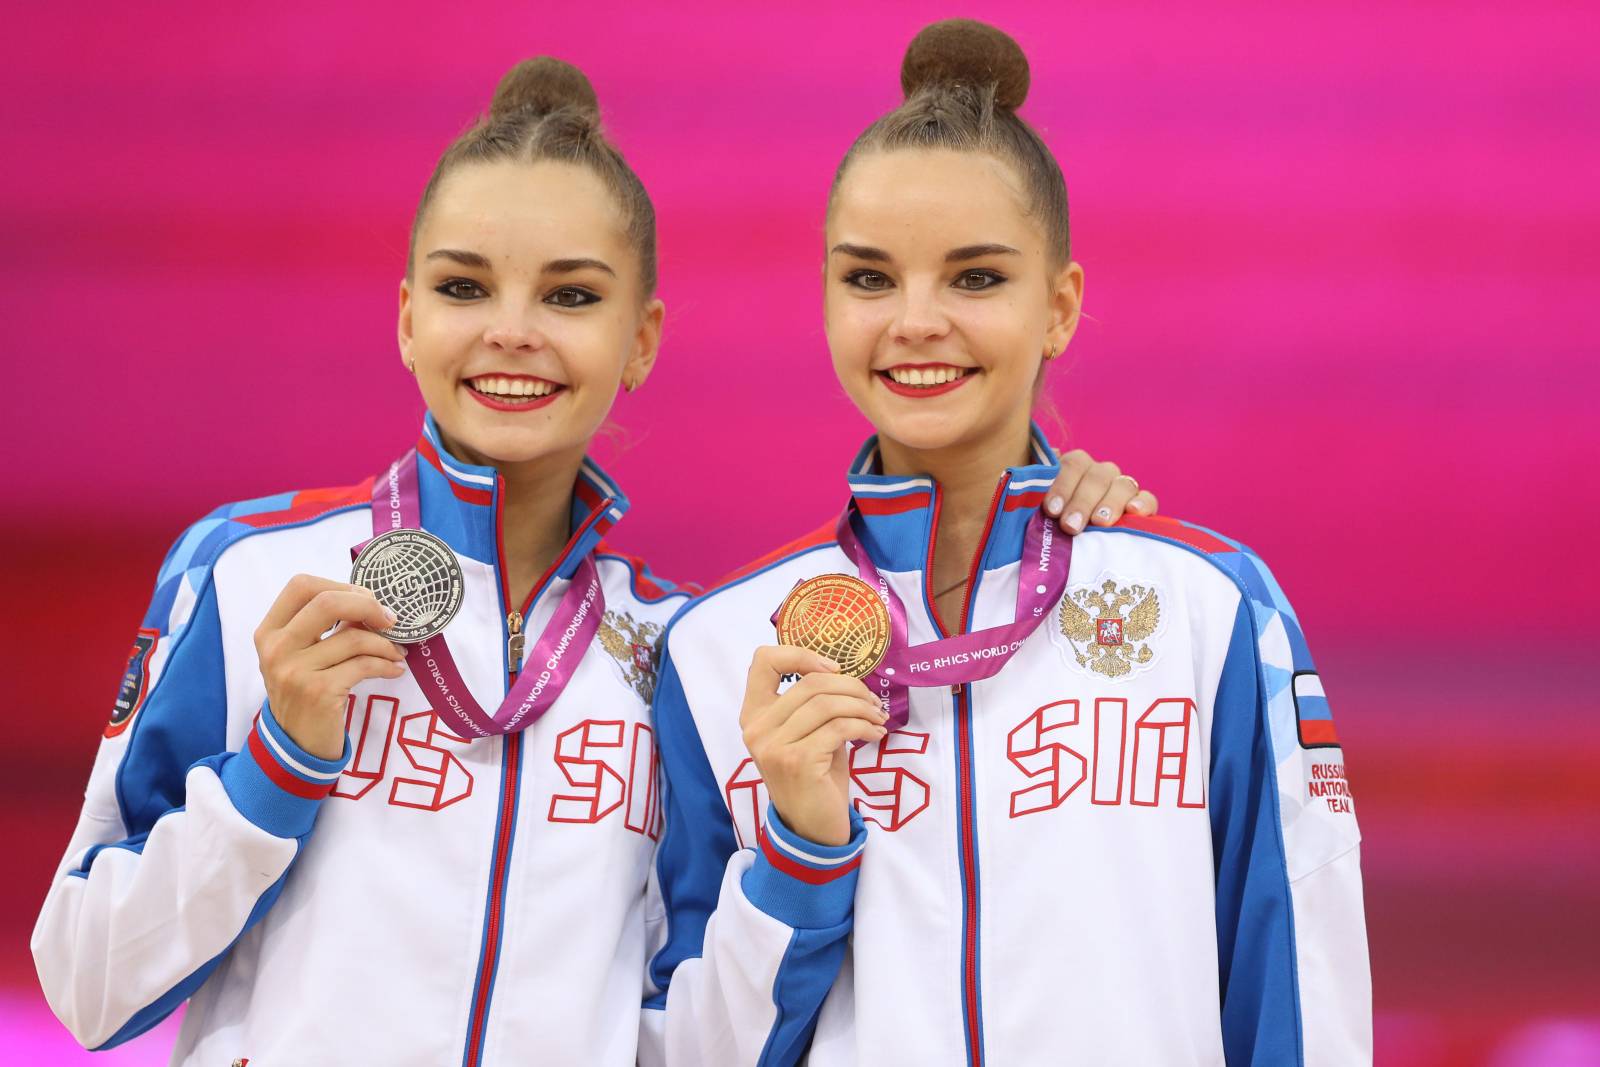 Сёстры Аверины завоевали золотую и серебряную медали в упражнениях с мячом на чемпионате мира в Японии